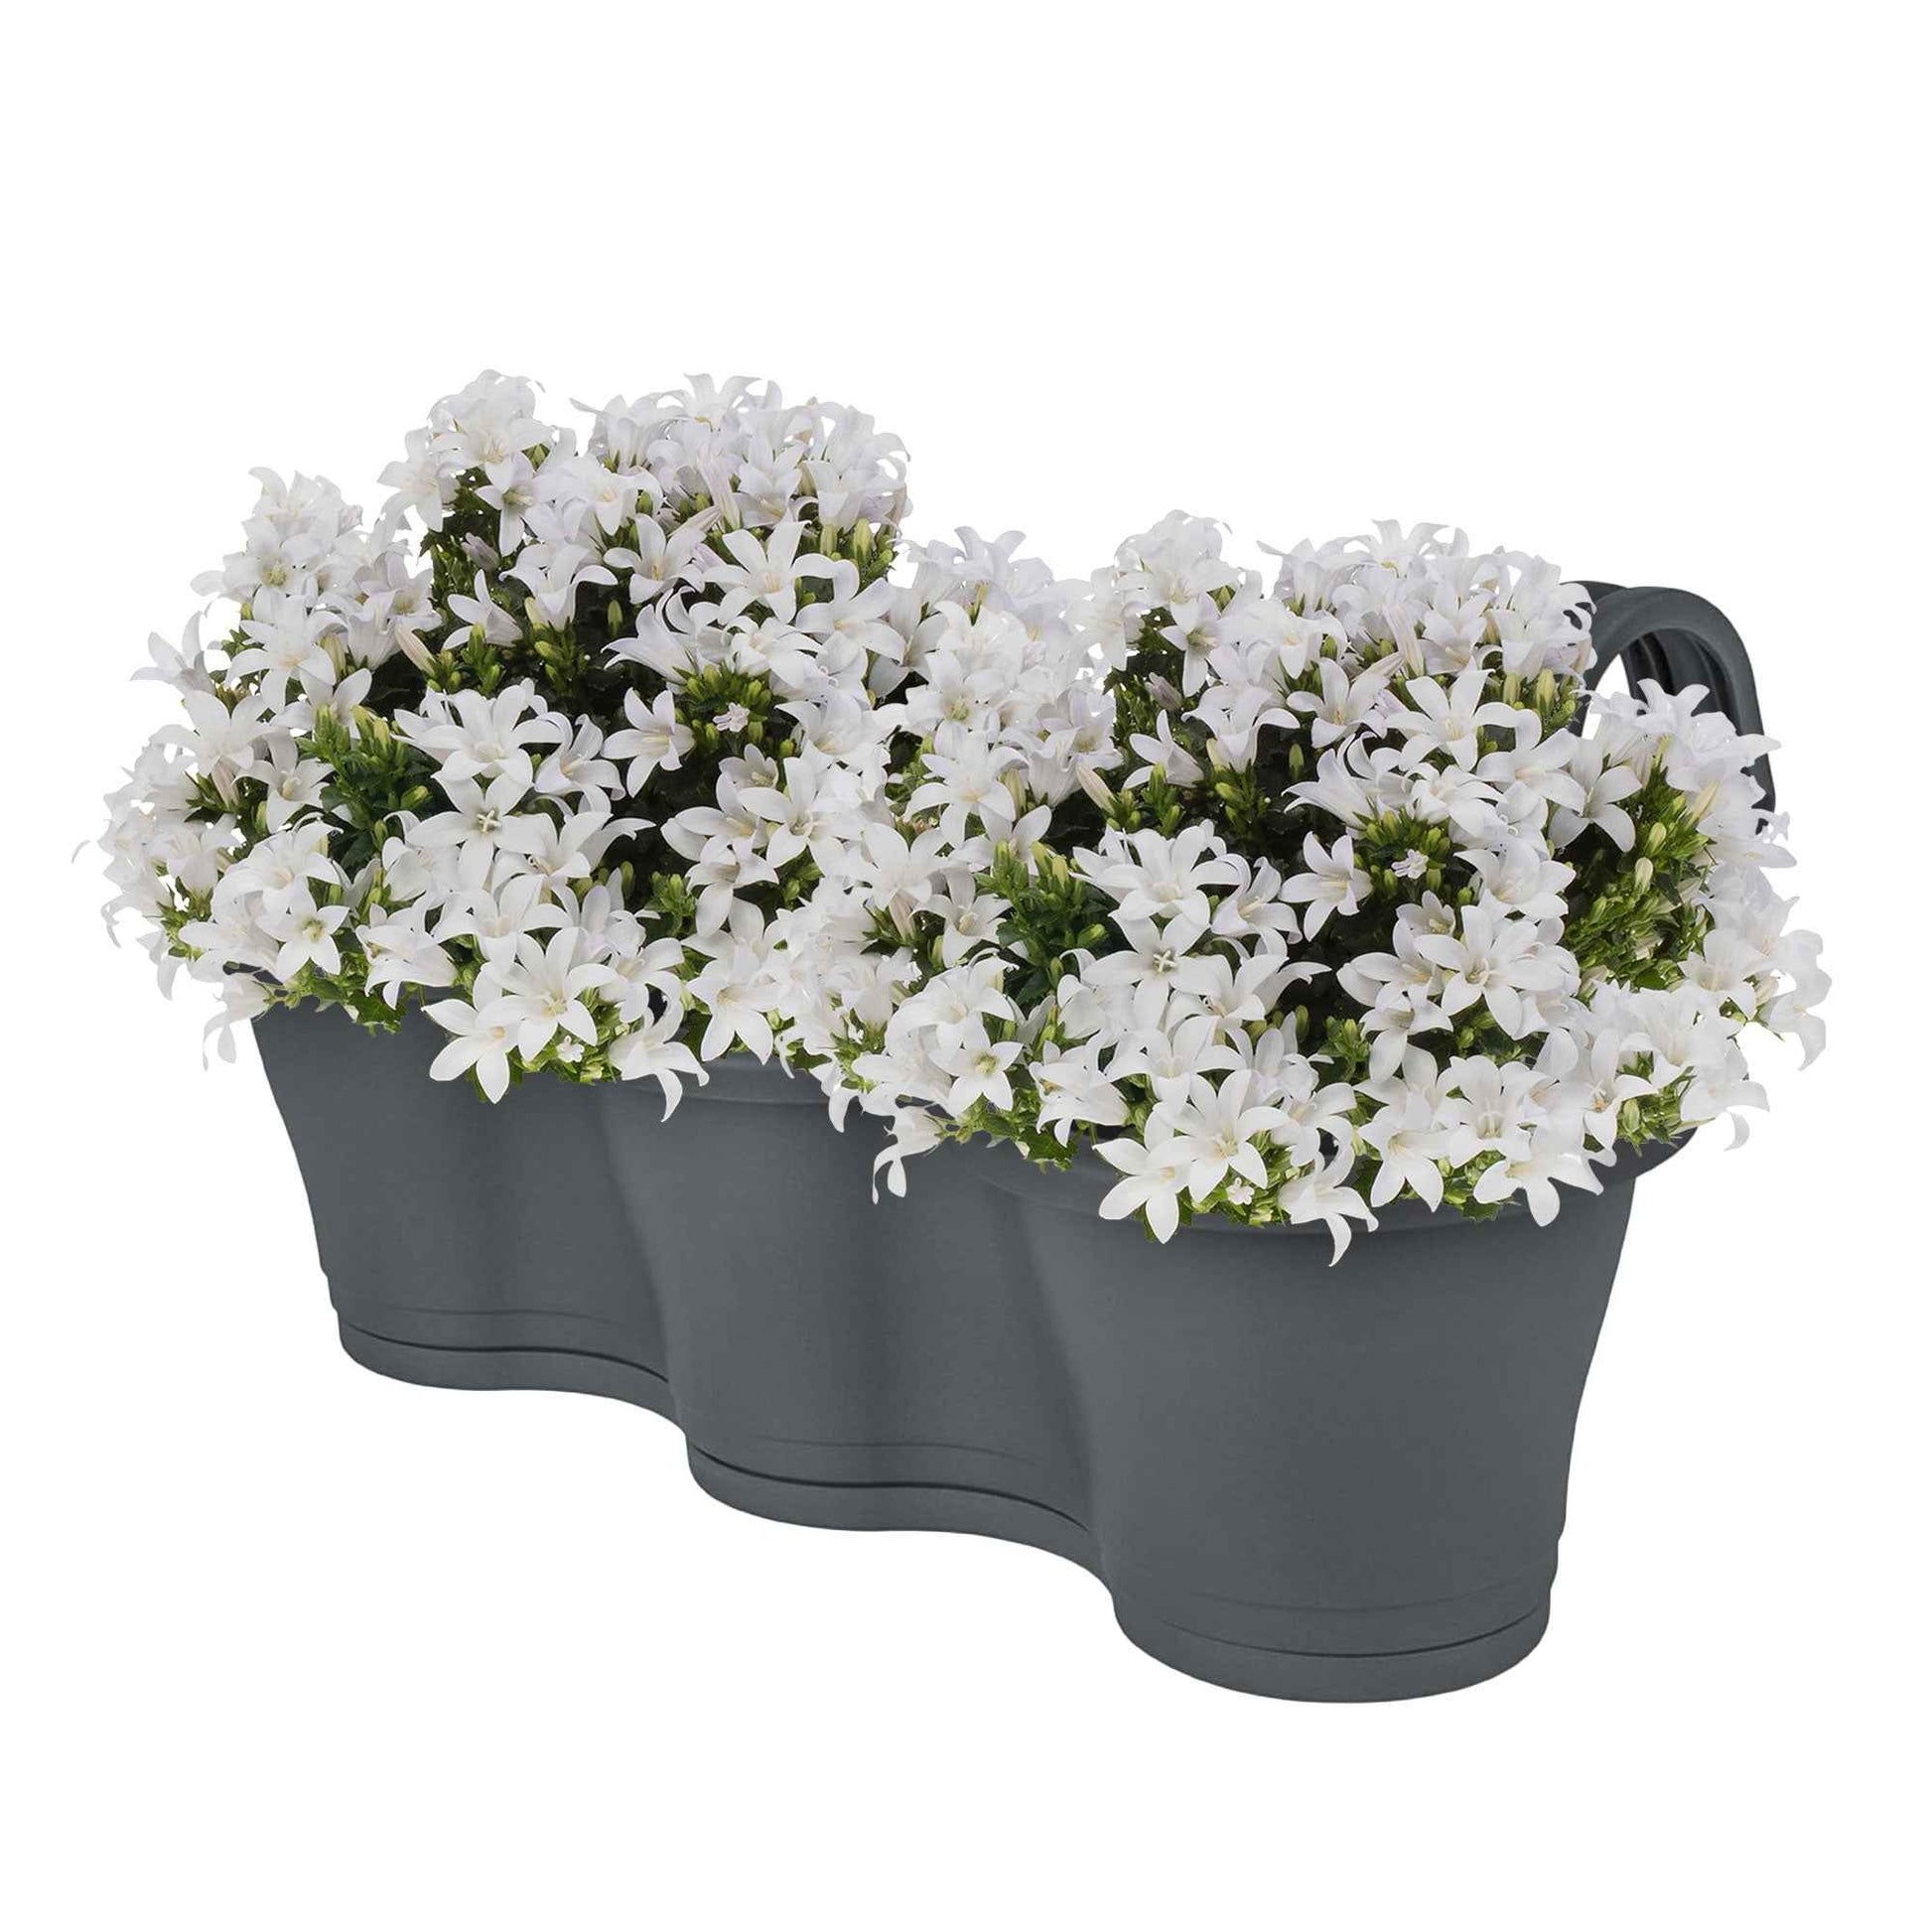 Achetez maintenant une plante vivace 3x Campanule Campanula 'White' blanc  avec jardinière anthracite | Bakker.com